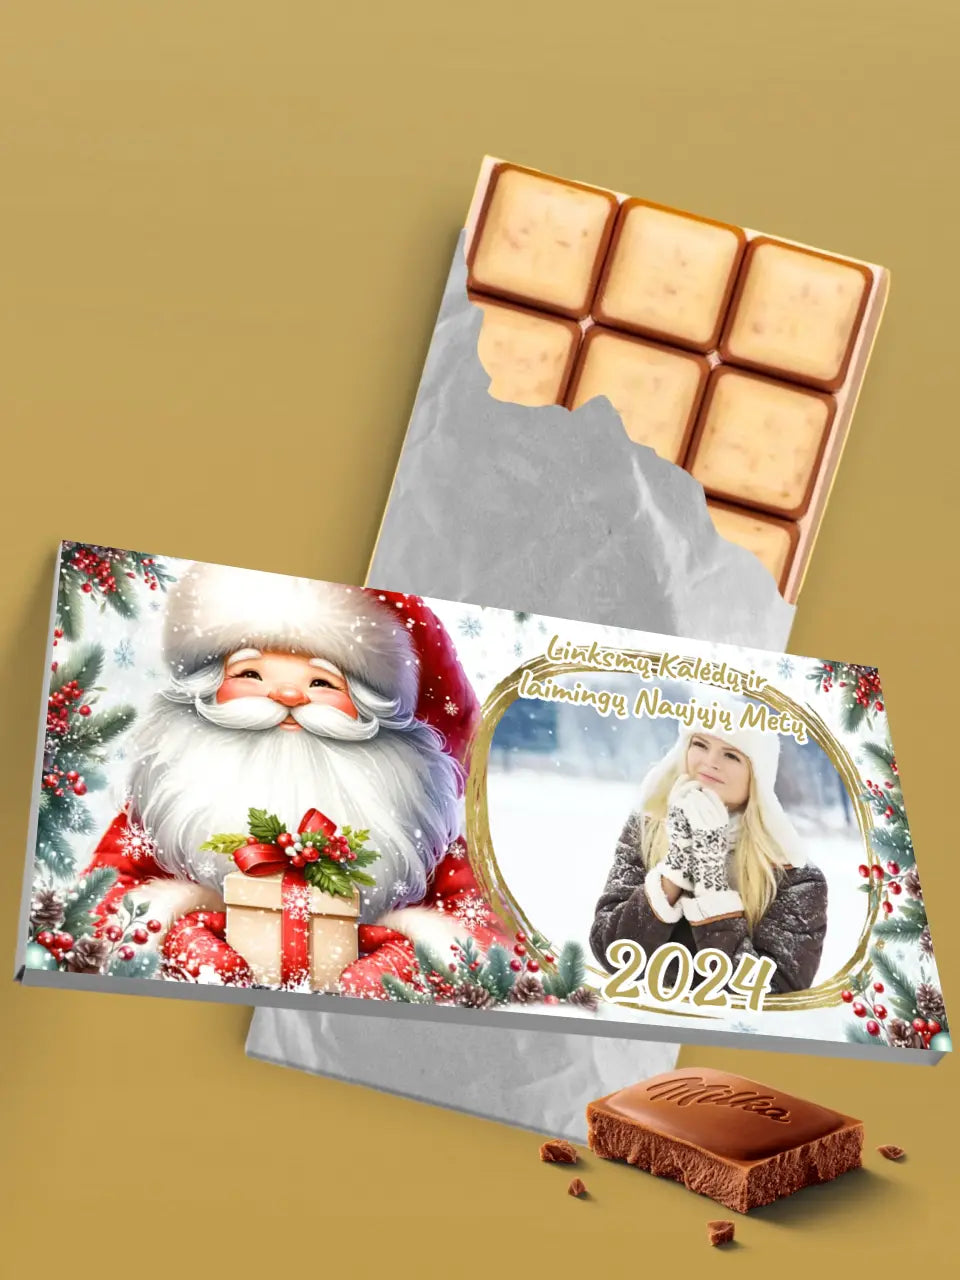 Personalizuotas "Kalėdinis dizainas 12“ šokoladas su jūsų nuotrauka